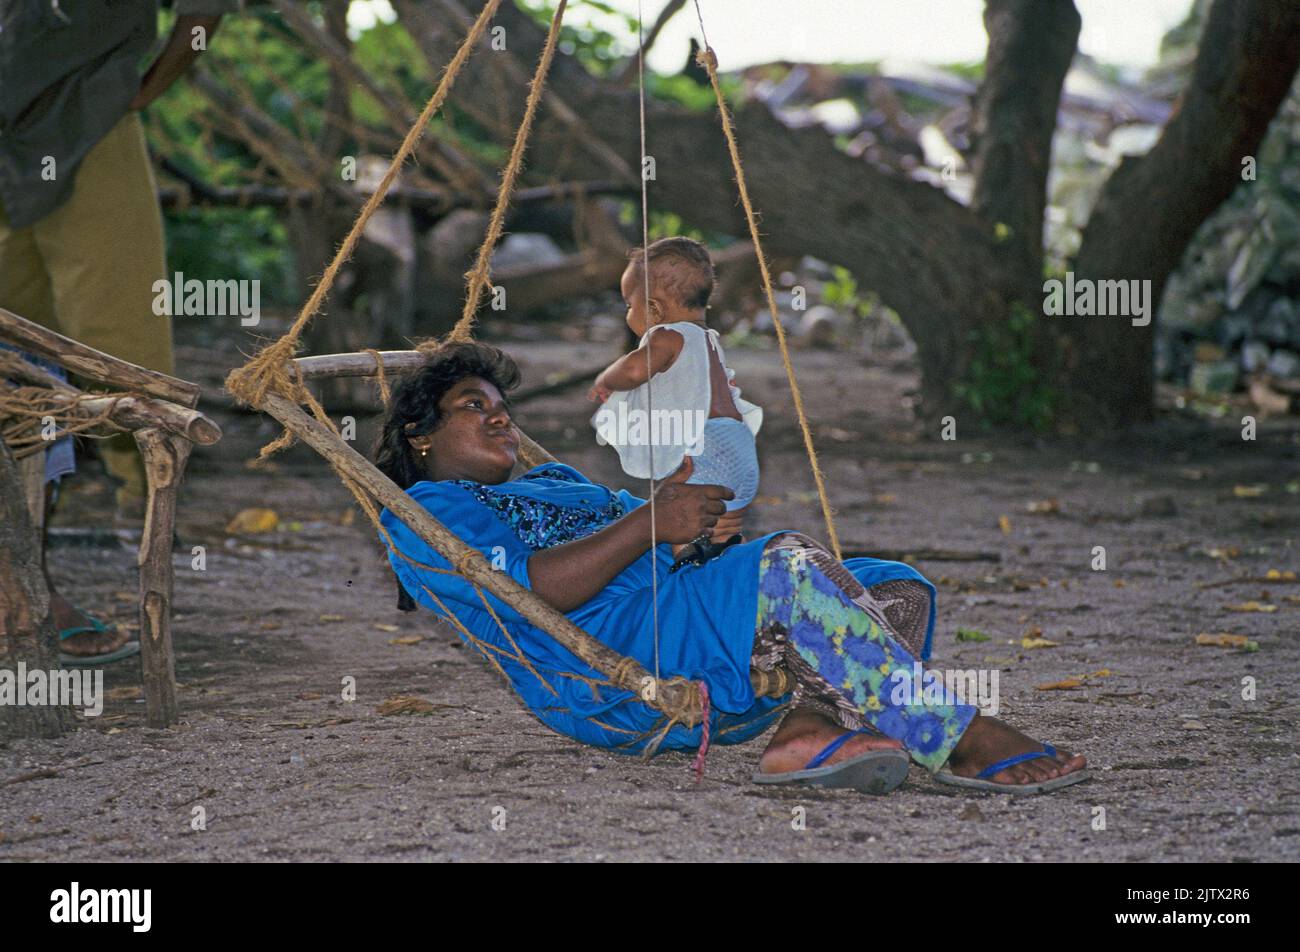 Maledivische Frau mit ihrem Baby auf einer Schaukel, Einheimischen-Insel Mahembadhoo, Malediven, Indischer Ozean, Asien | Maldive donna con il suo bab Foto Stock